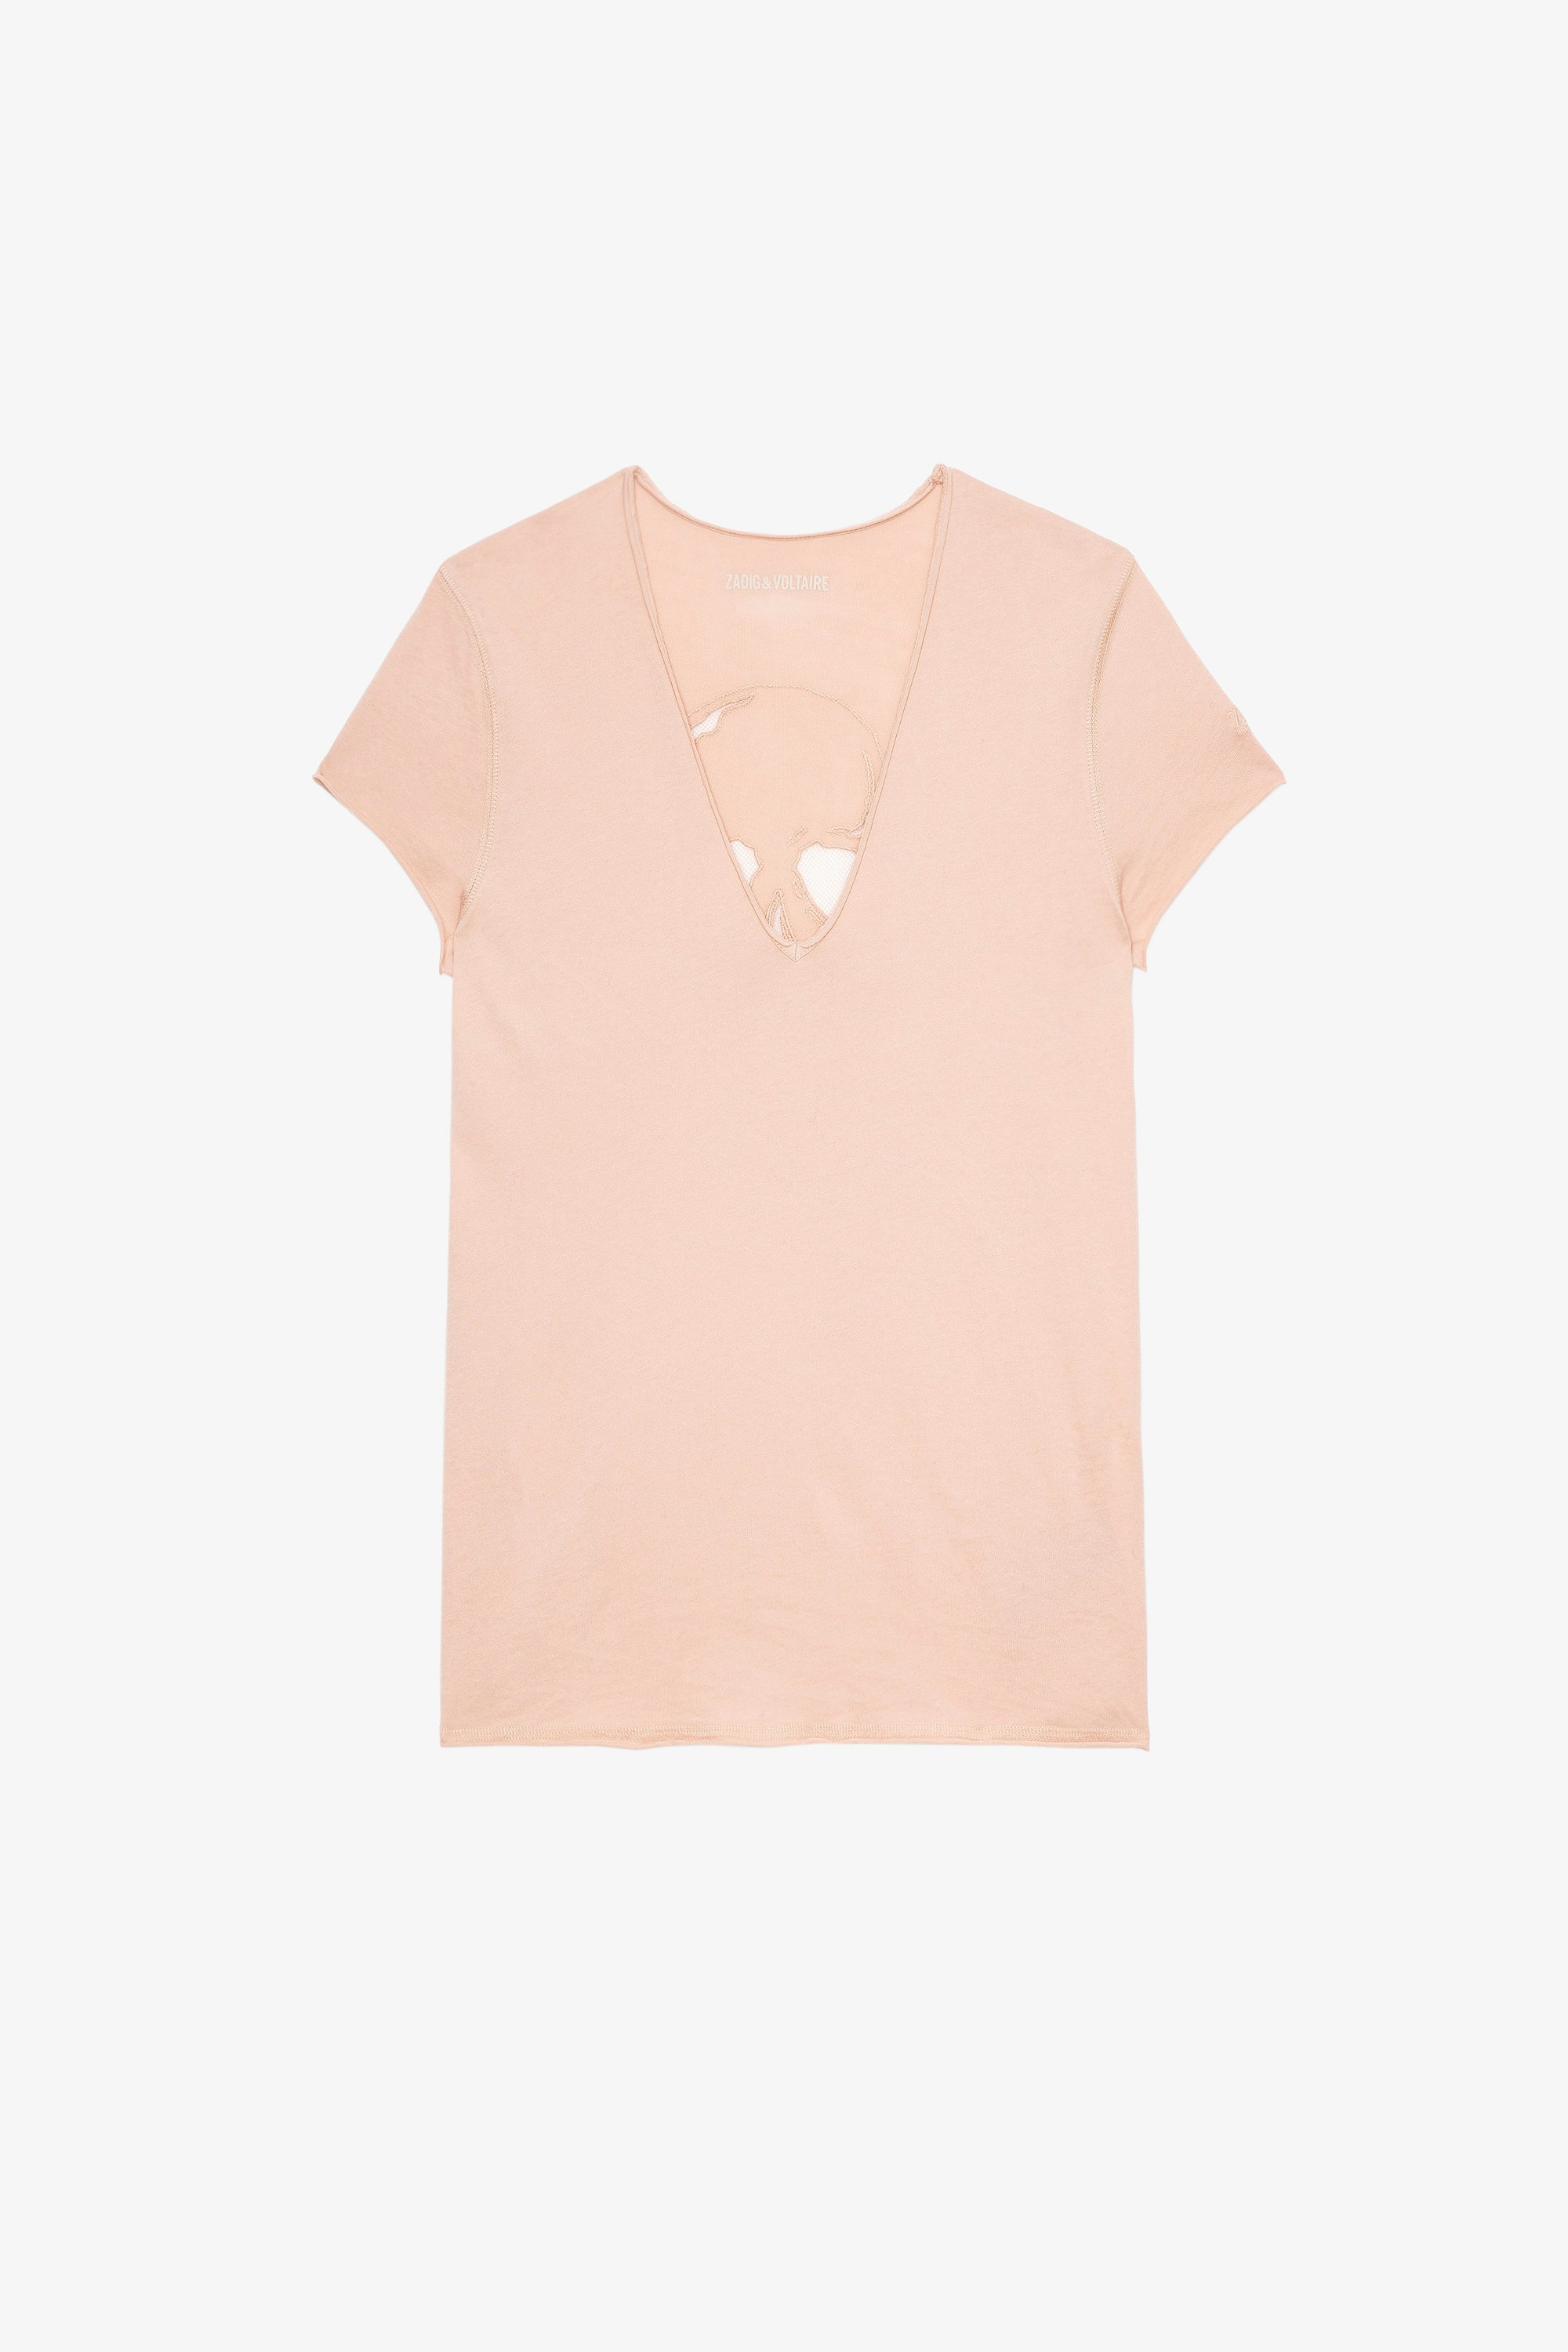 Camiseta Story Fishnet Skull Cross Camiseta de algodón rosa con bordado de calavera en la espalda para mujer